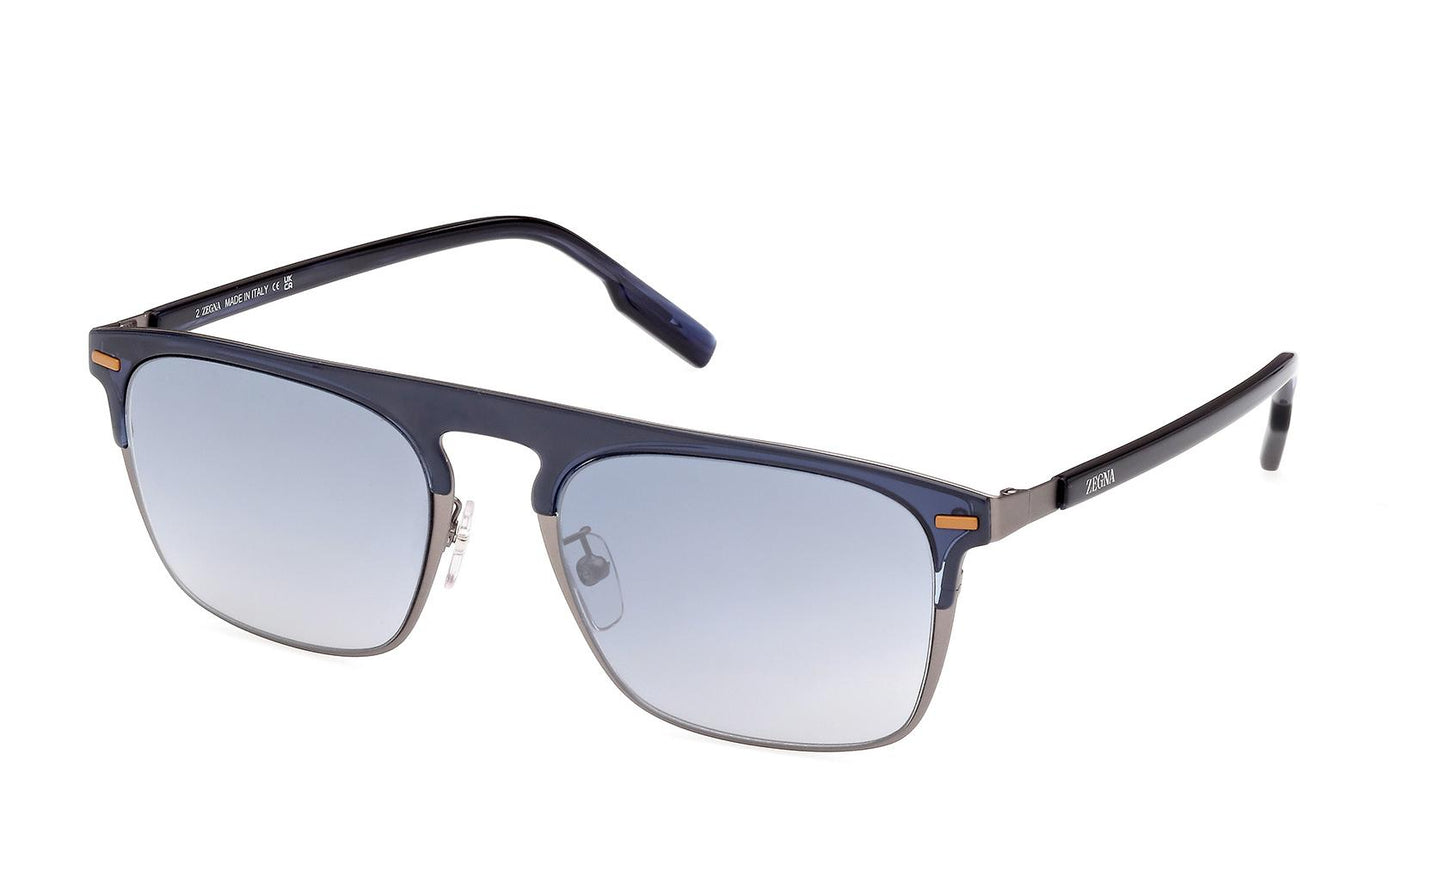 Zegna Sunglasses EZ0216/H 90X